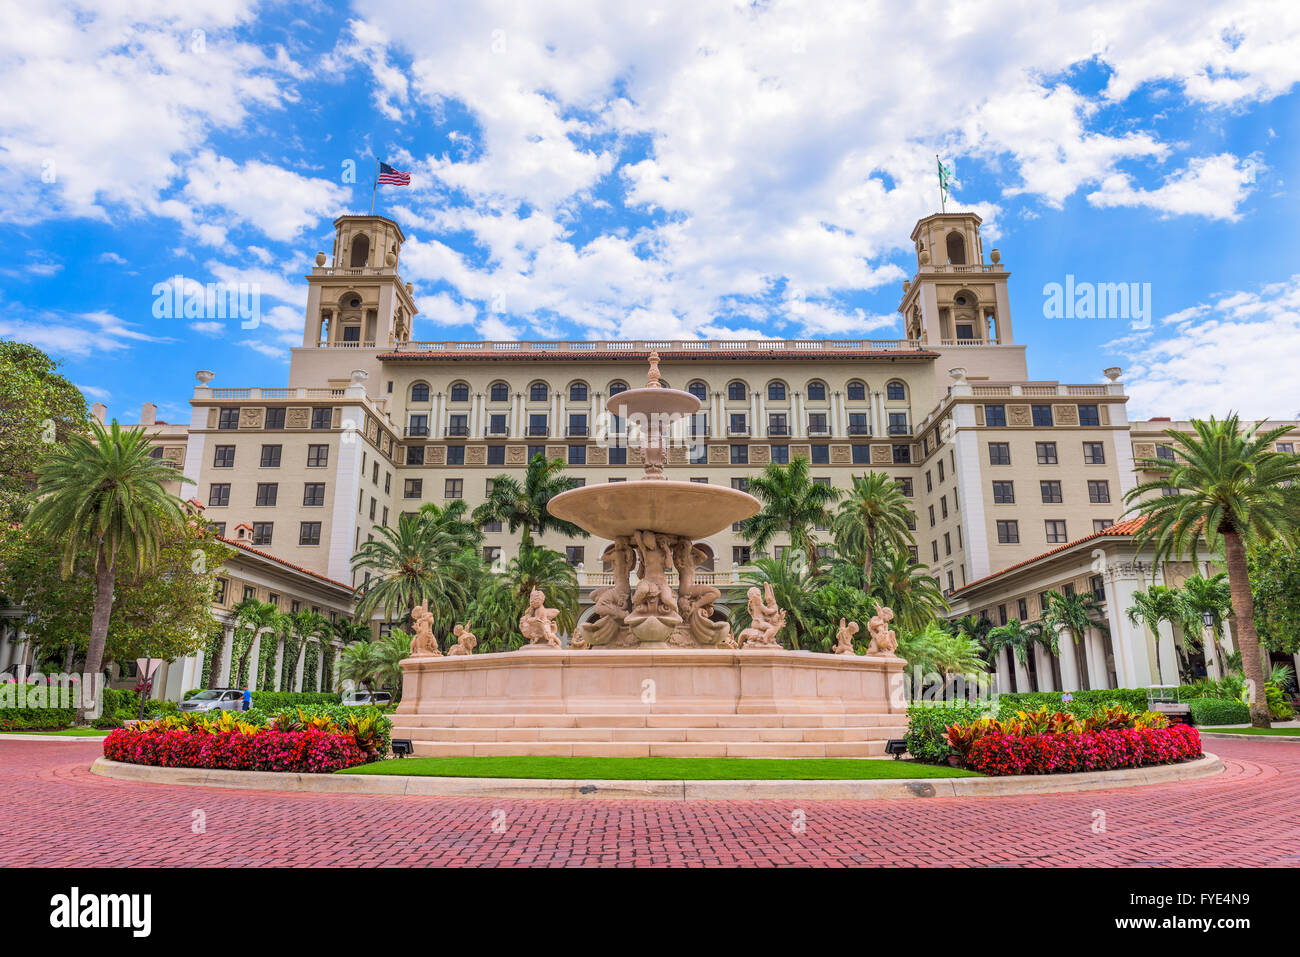 WEST PALM BEACH, Floride - le 4 avril 2016 : l'extérieur de Breakers hotel à West Palm Beach. L'hôtel date de 1925. Banque D'Images